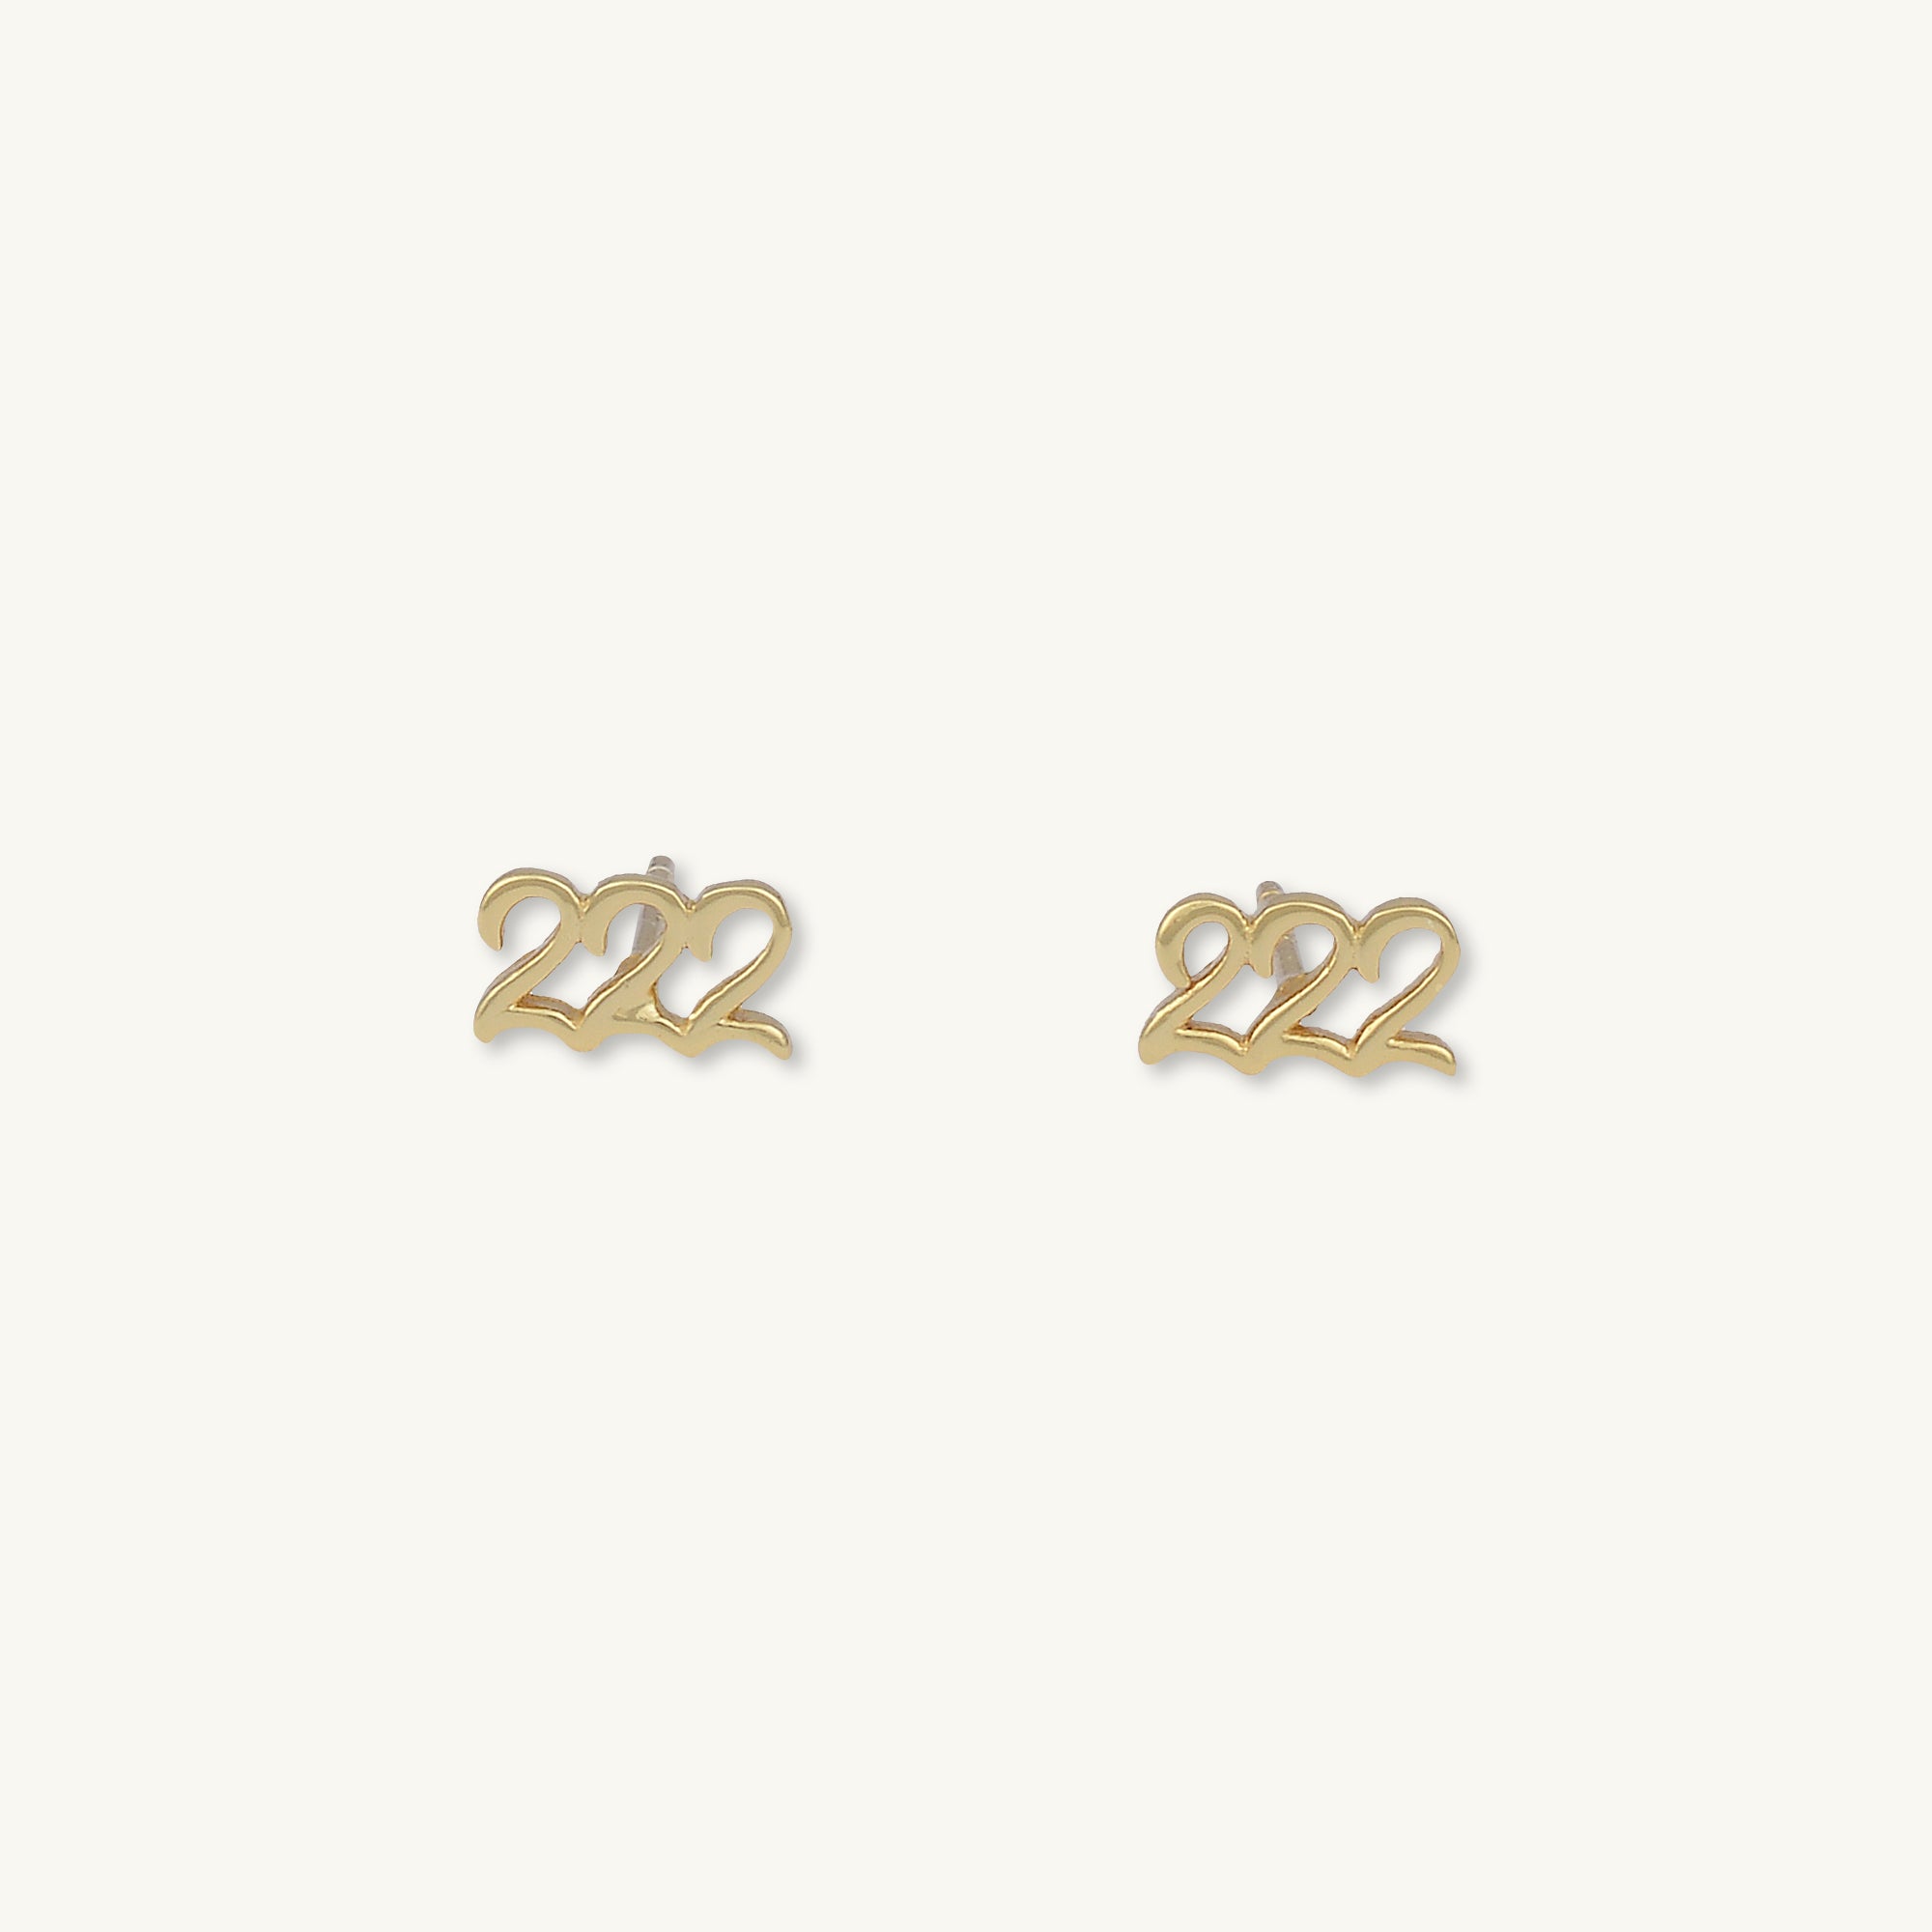 222 Angel Number Earrings